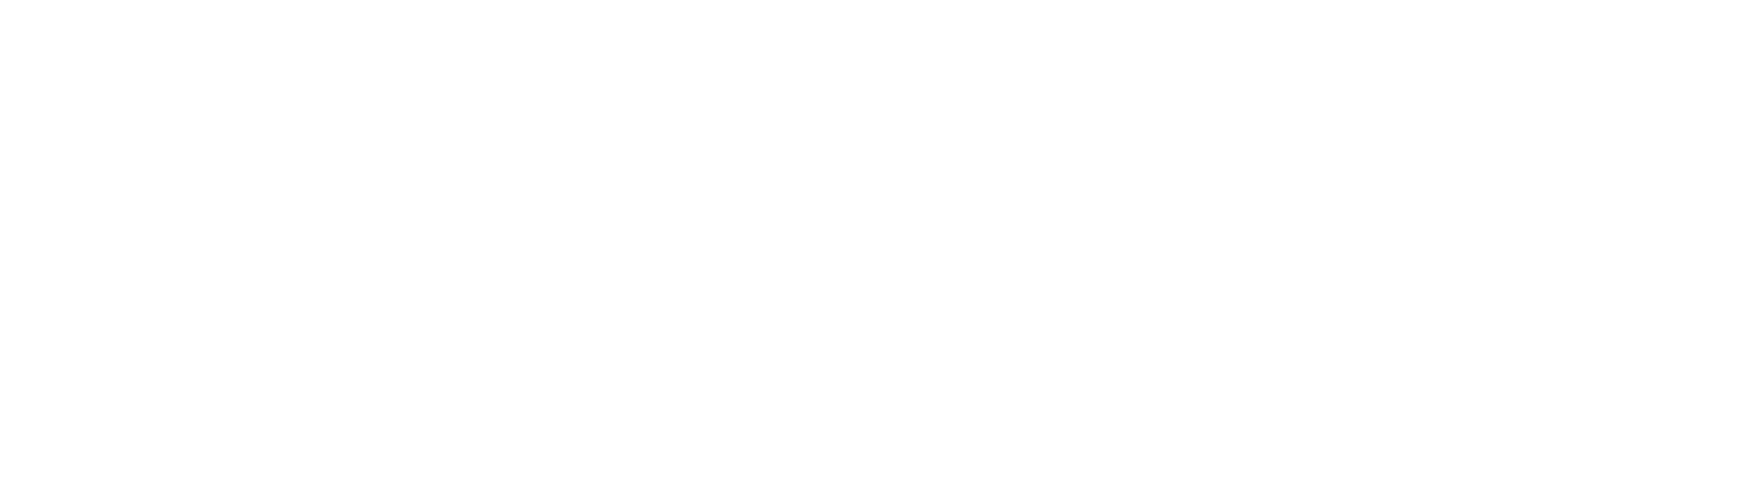 боткинский логотип